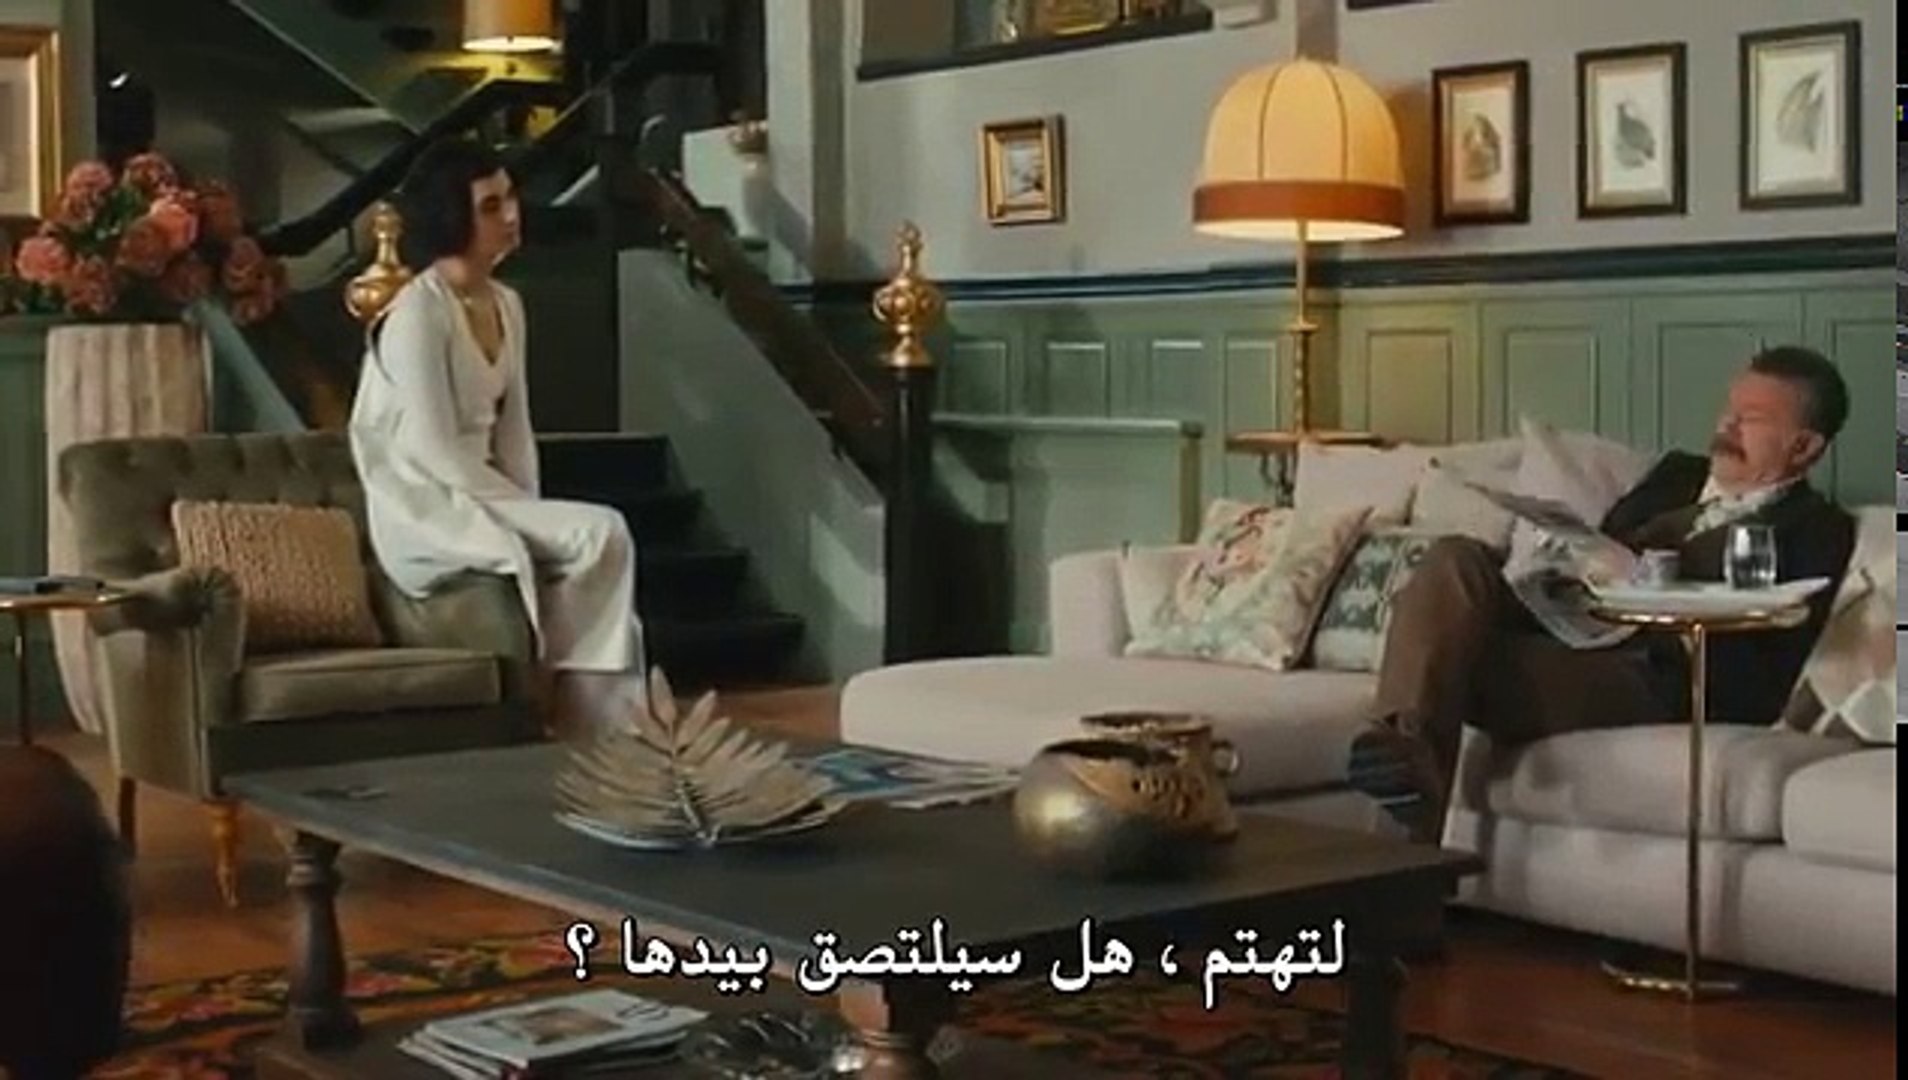 مسلسل جسور و الجميلة الحلقة 21 كاملة مترجمة للعربية P2 Video Dailymotion